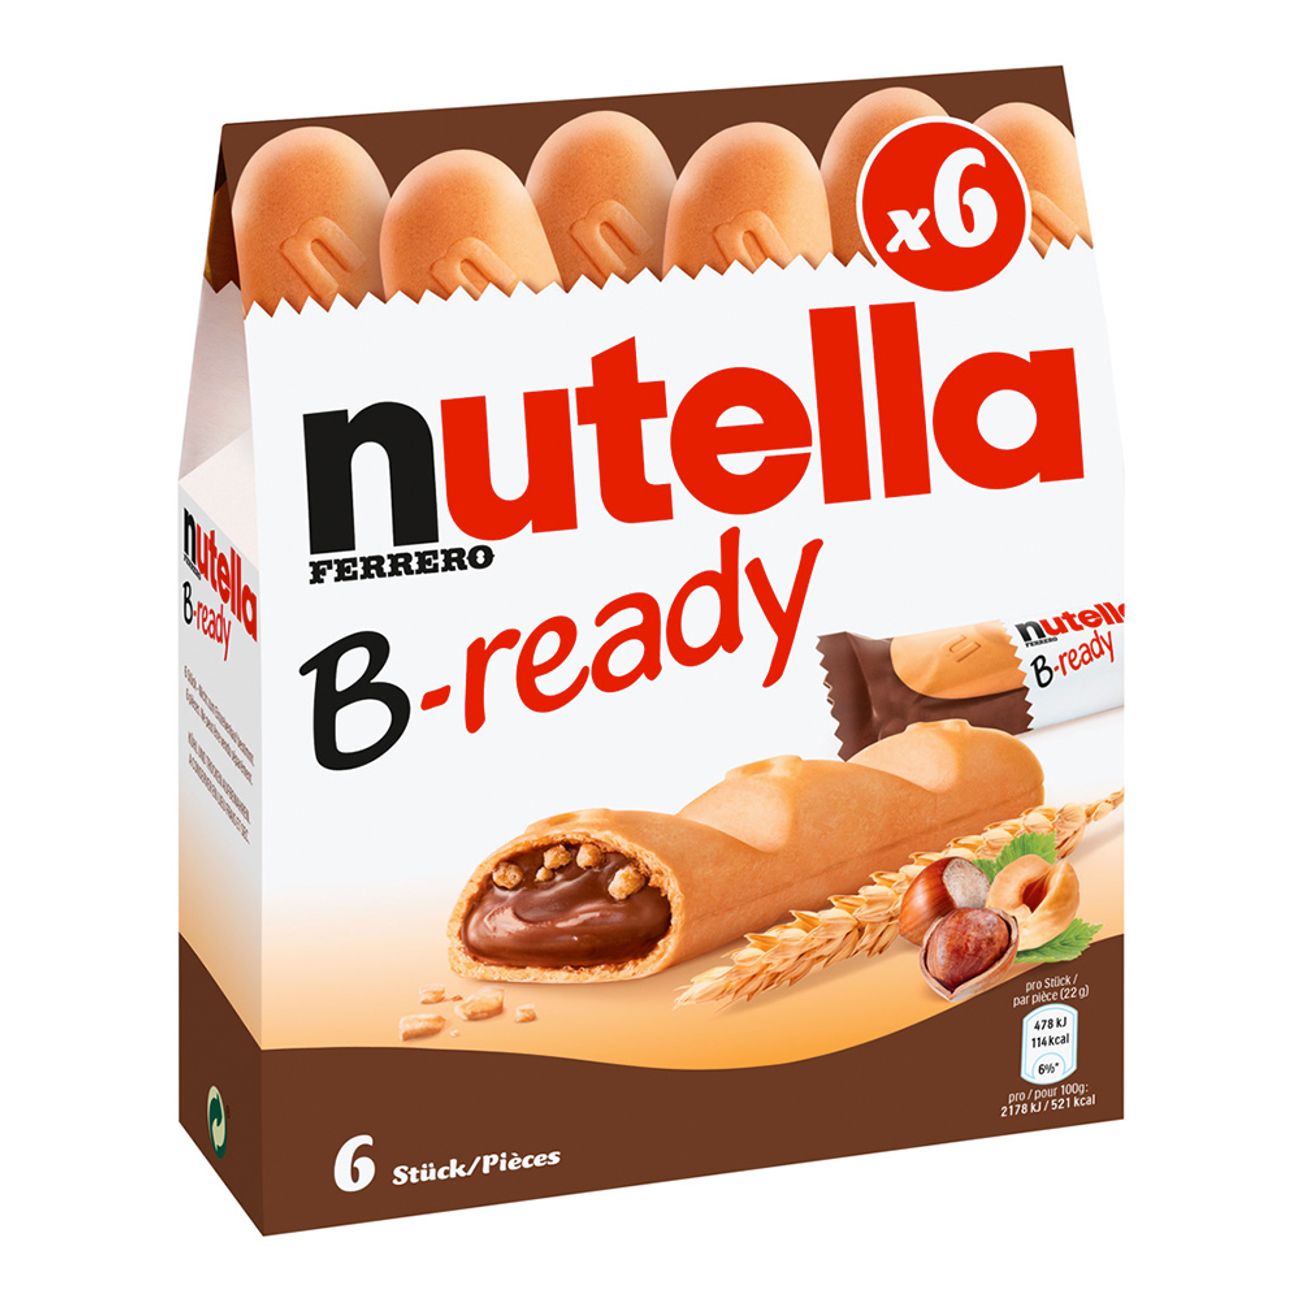 nutella-b-ready-2